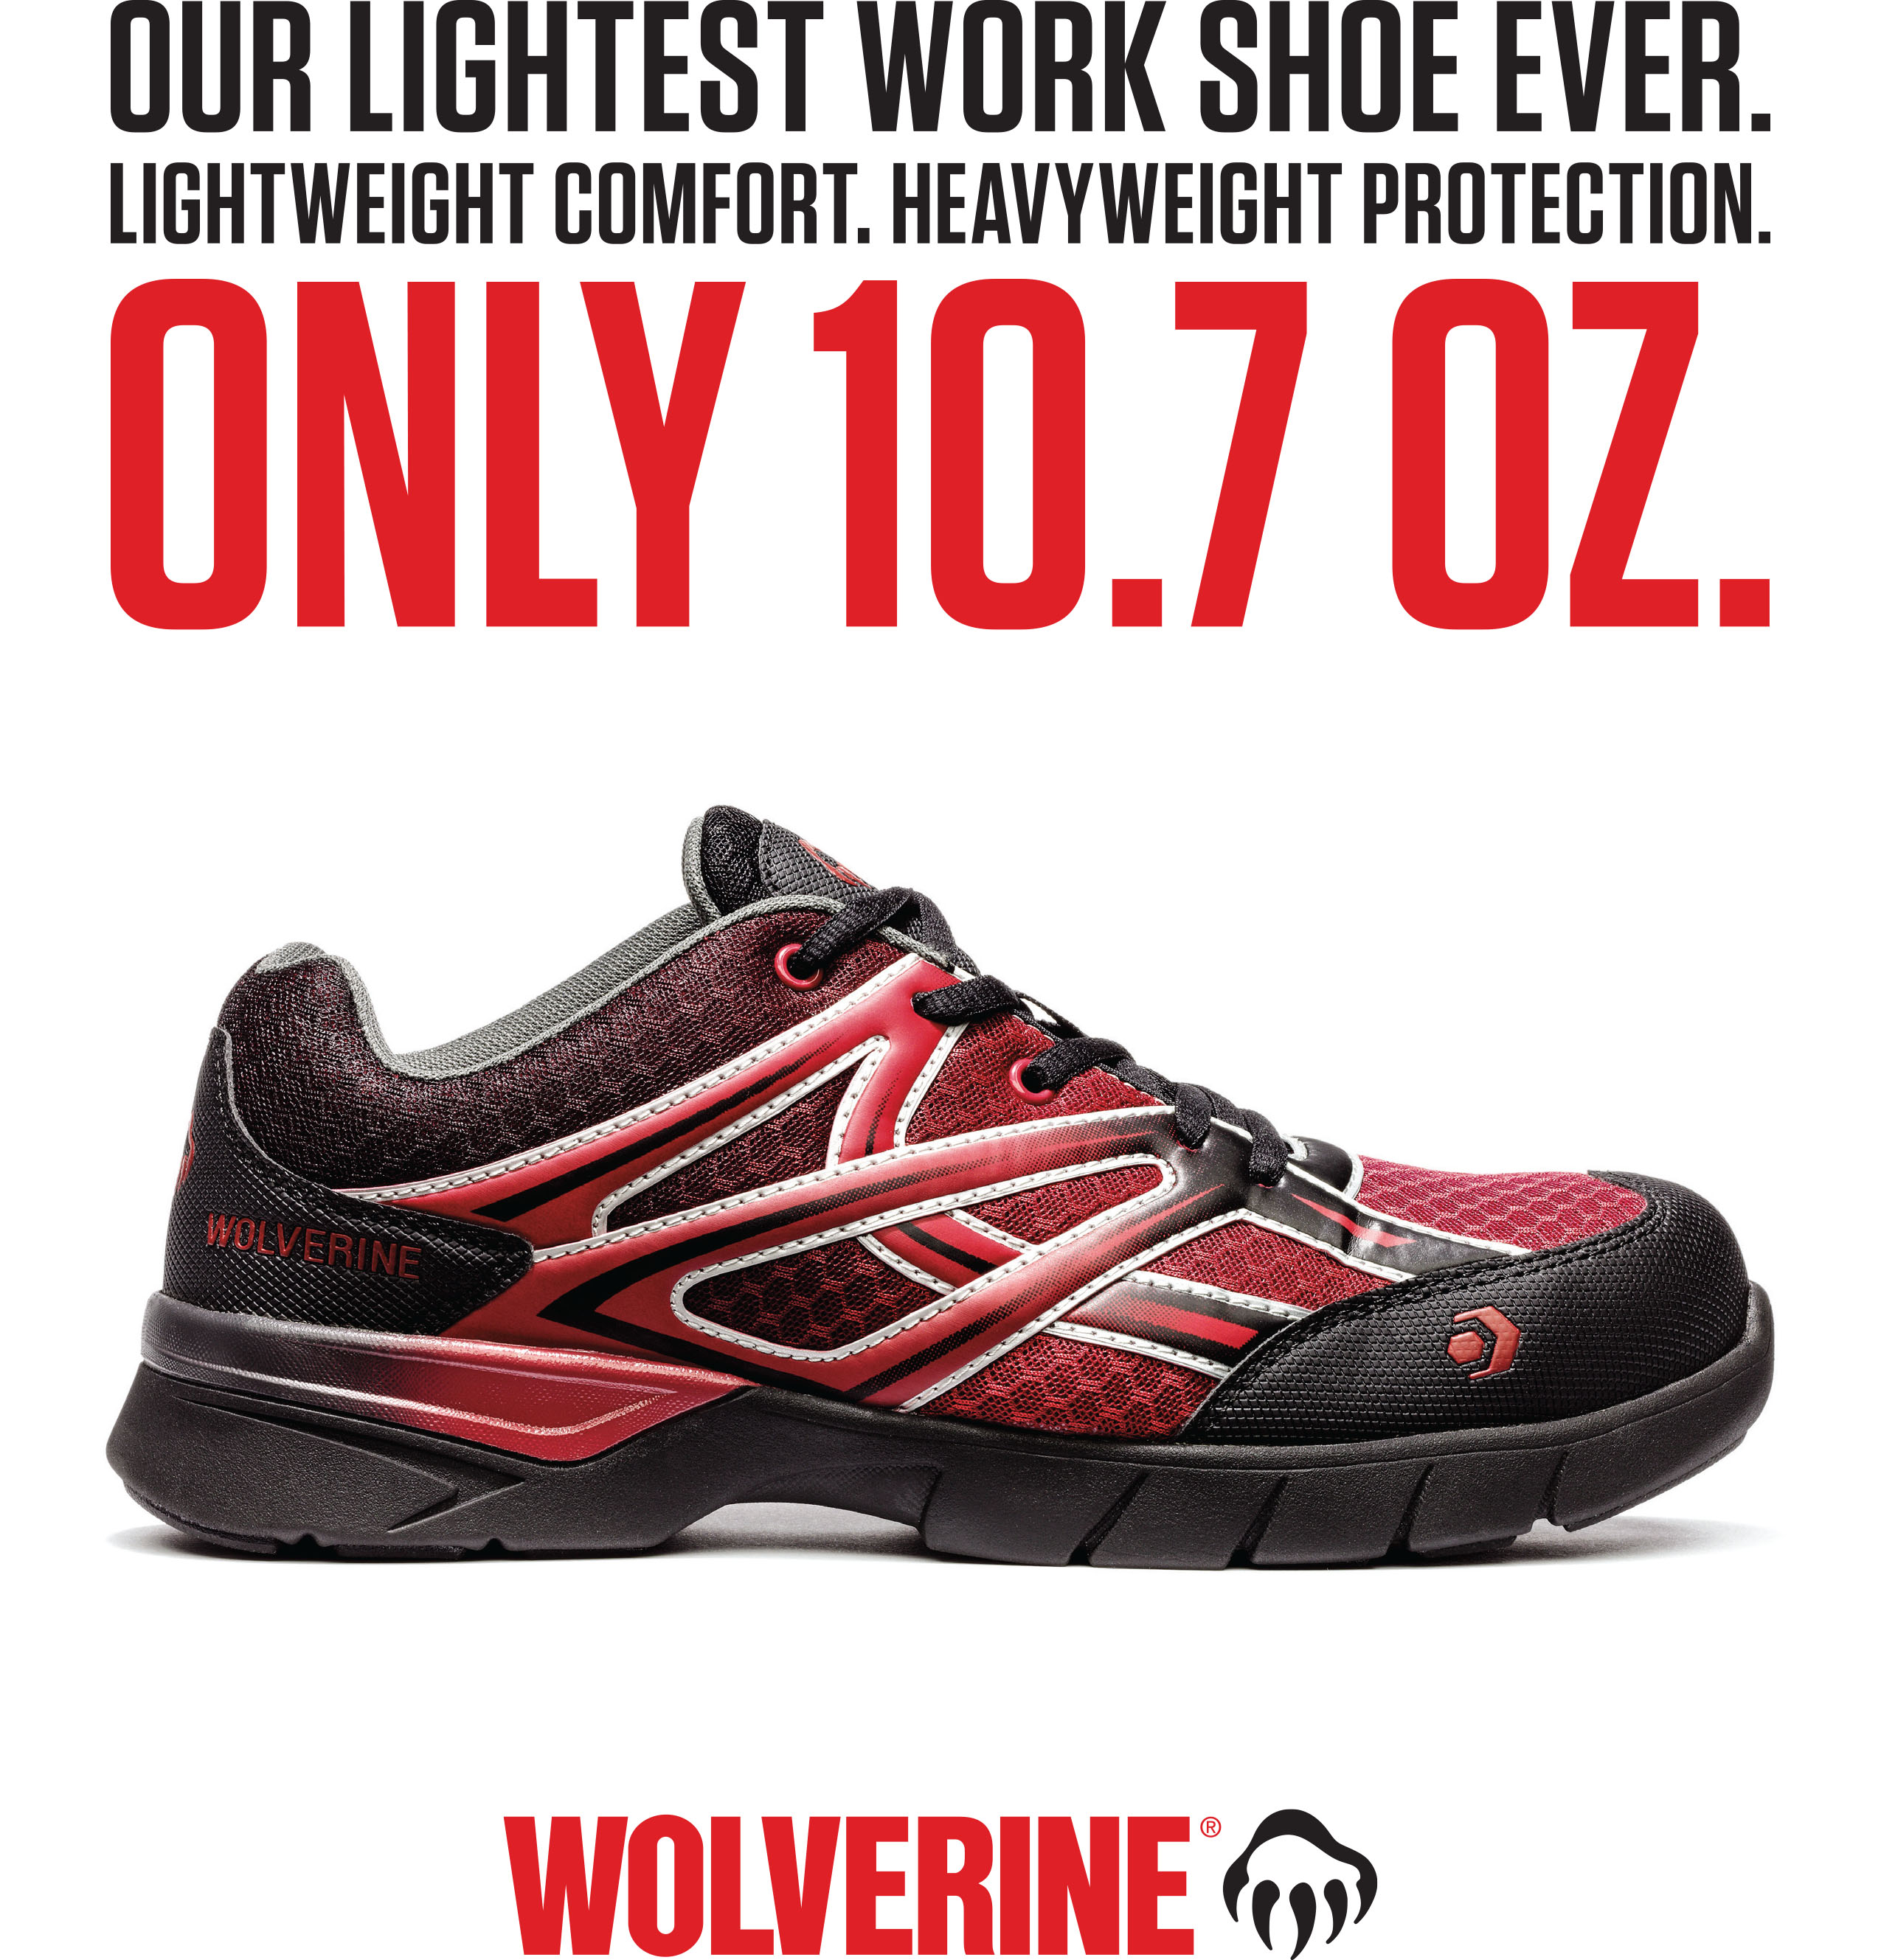 wolverine work shoe